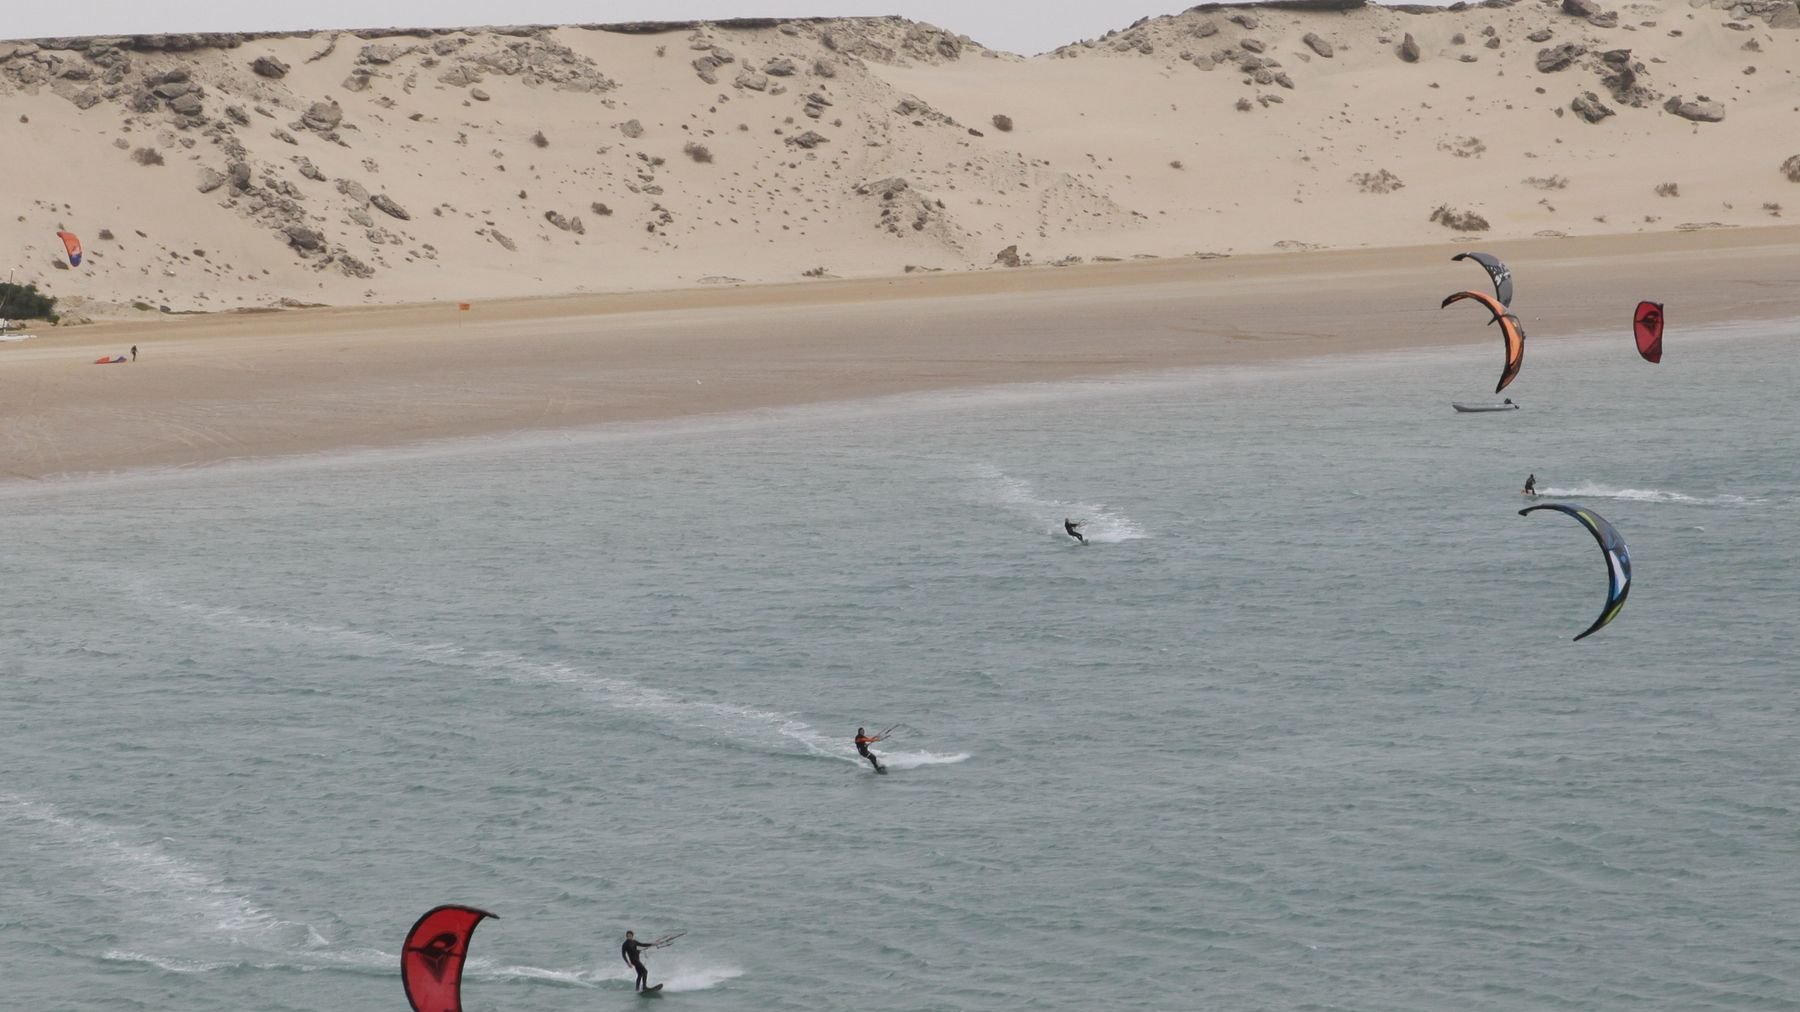 Les kitesurfeurs se sont élancés, fendant les eaux de traînées blanches écumantes. 
